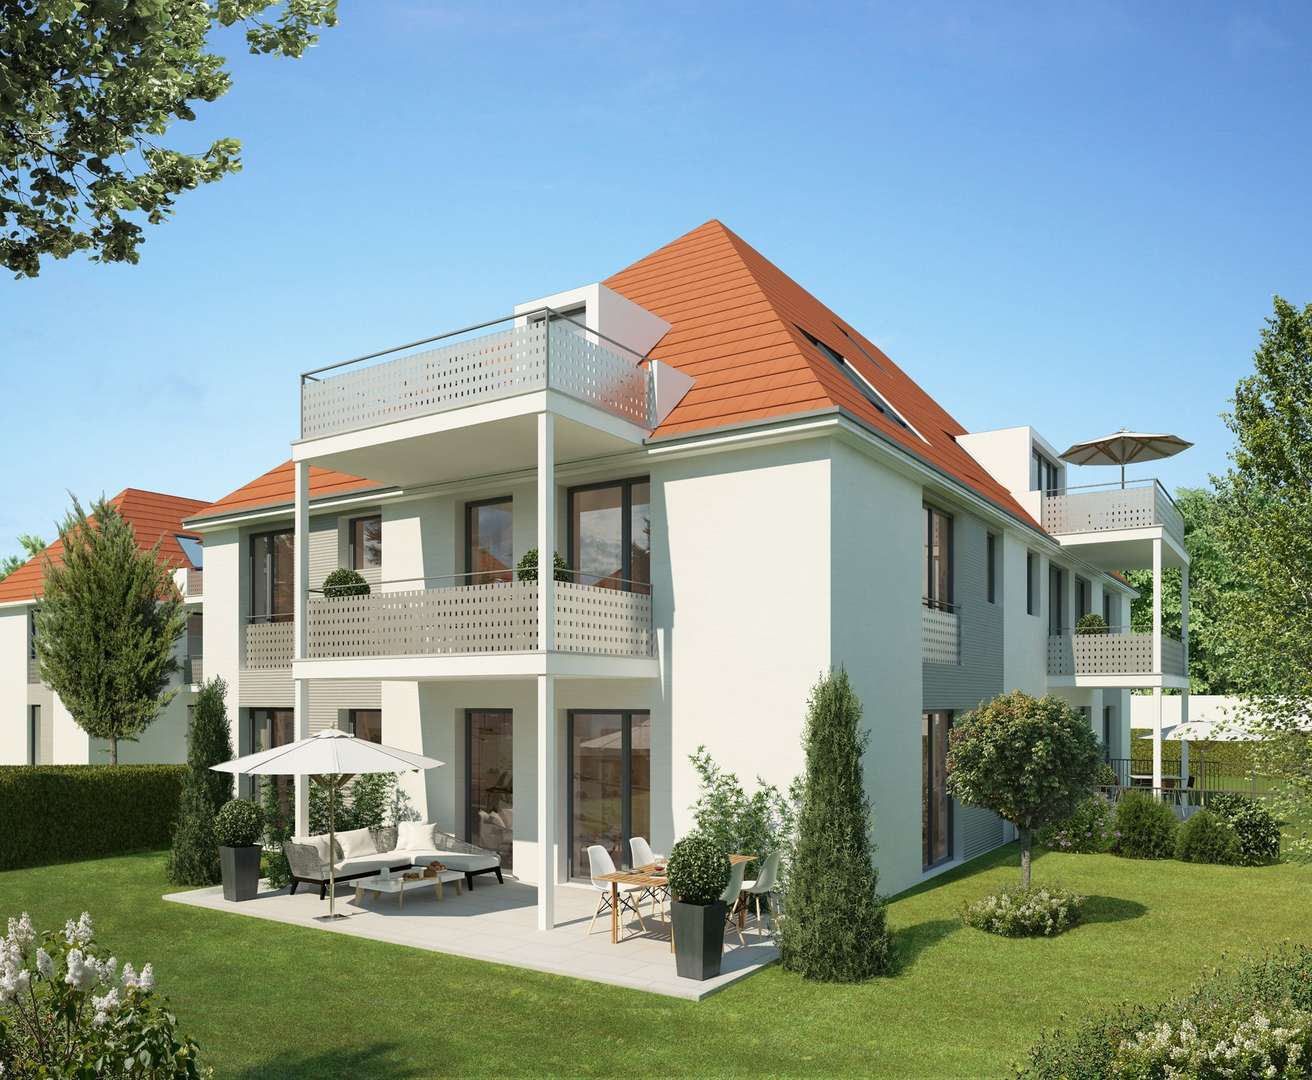 Haus 4 - Erdgeschosswohnung in 81476 München mit 97m² kaufen